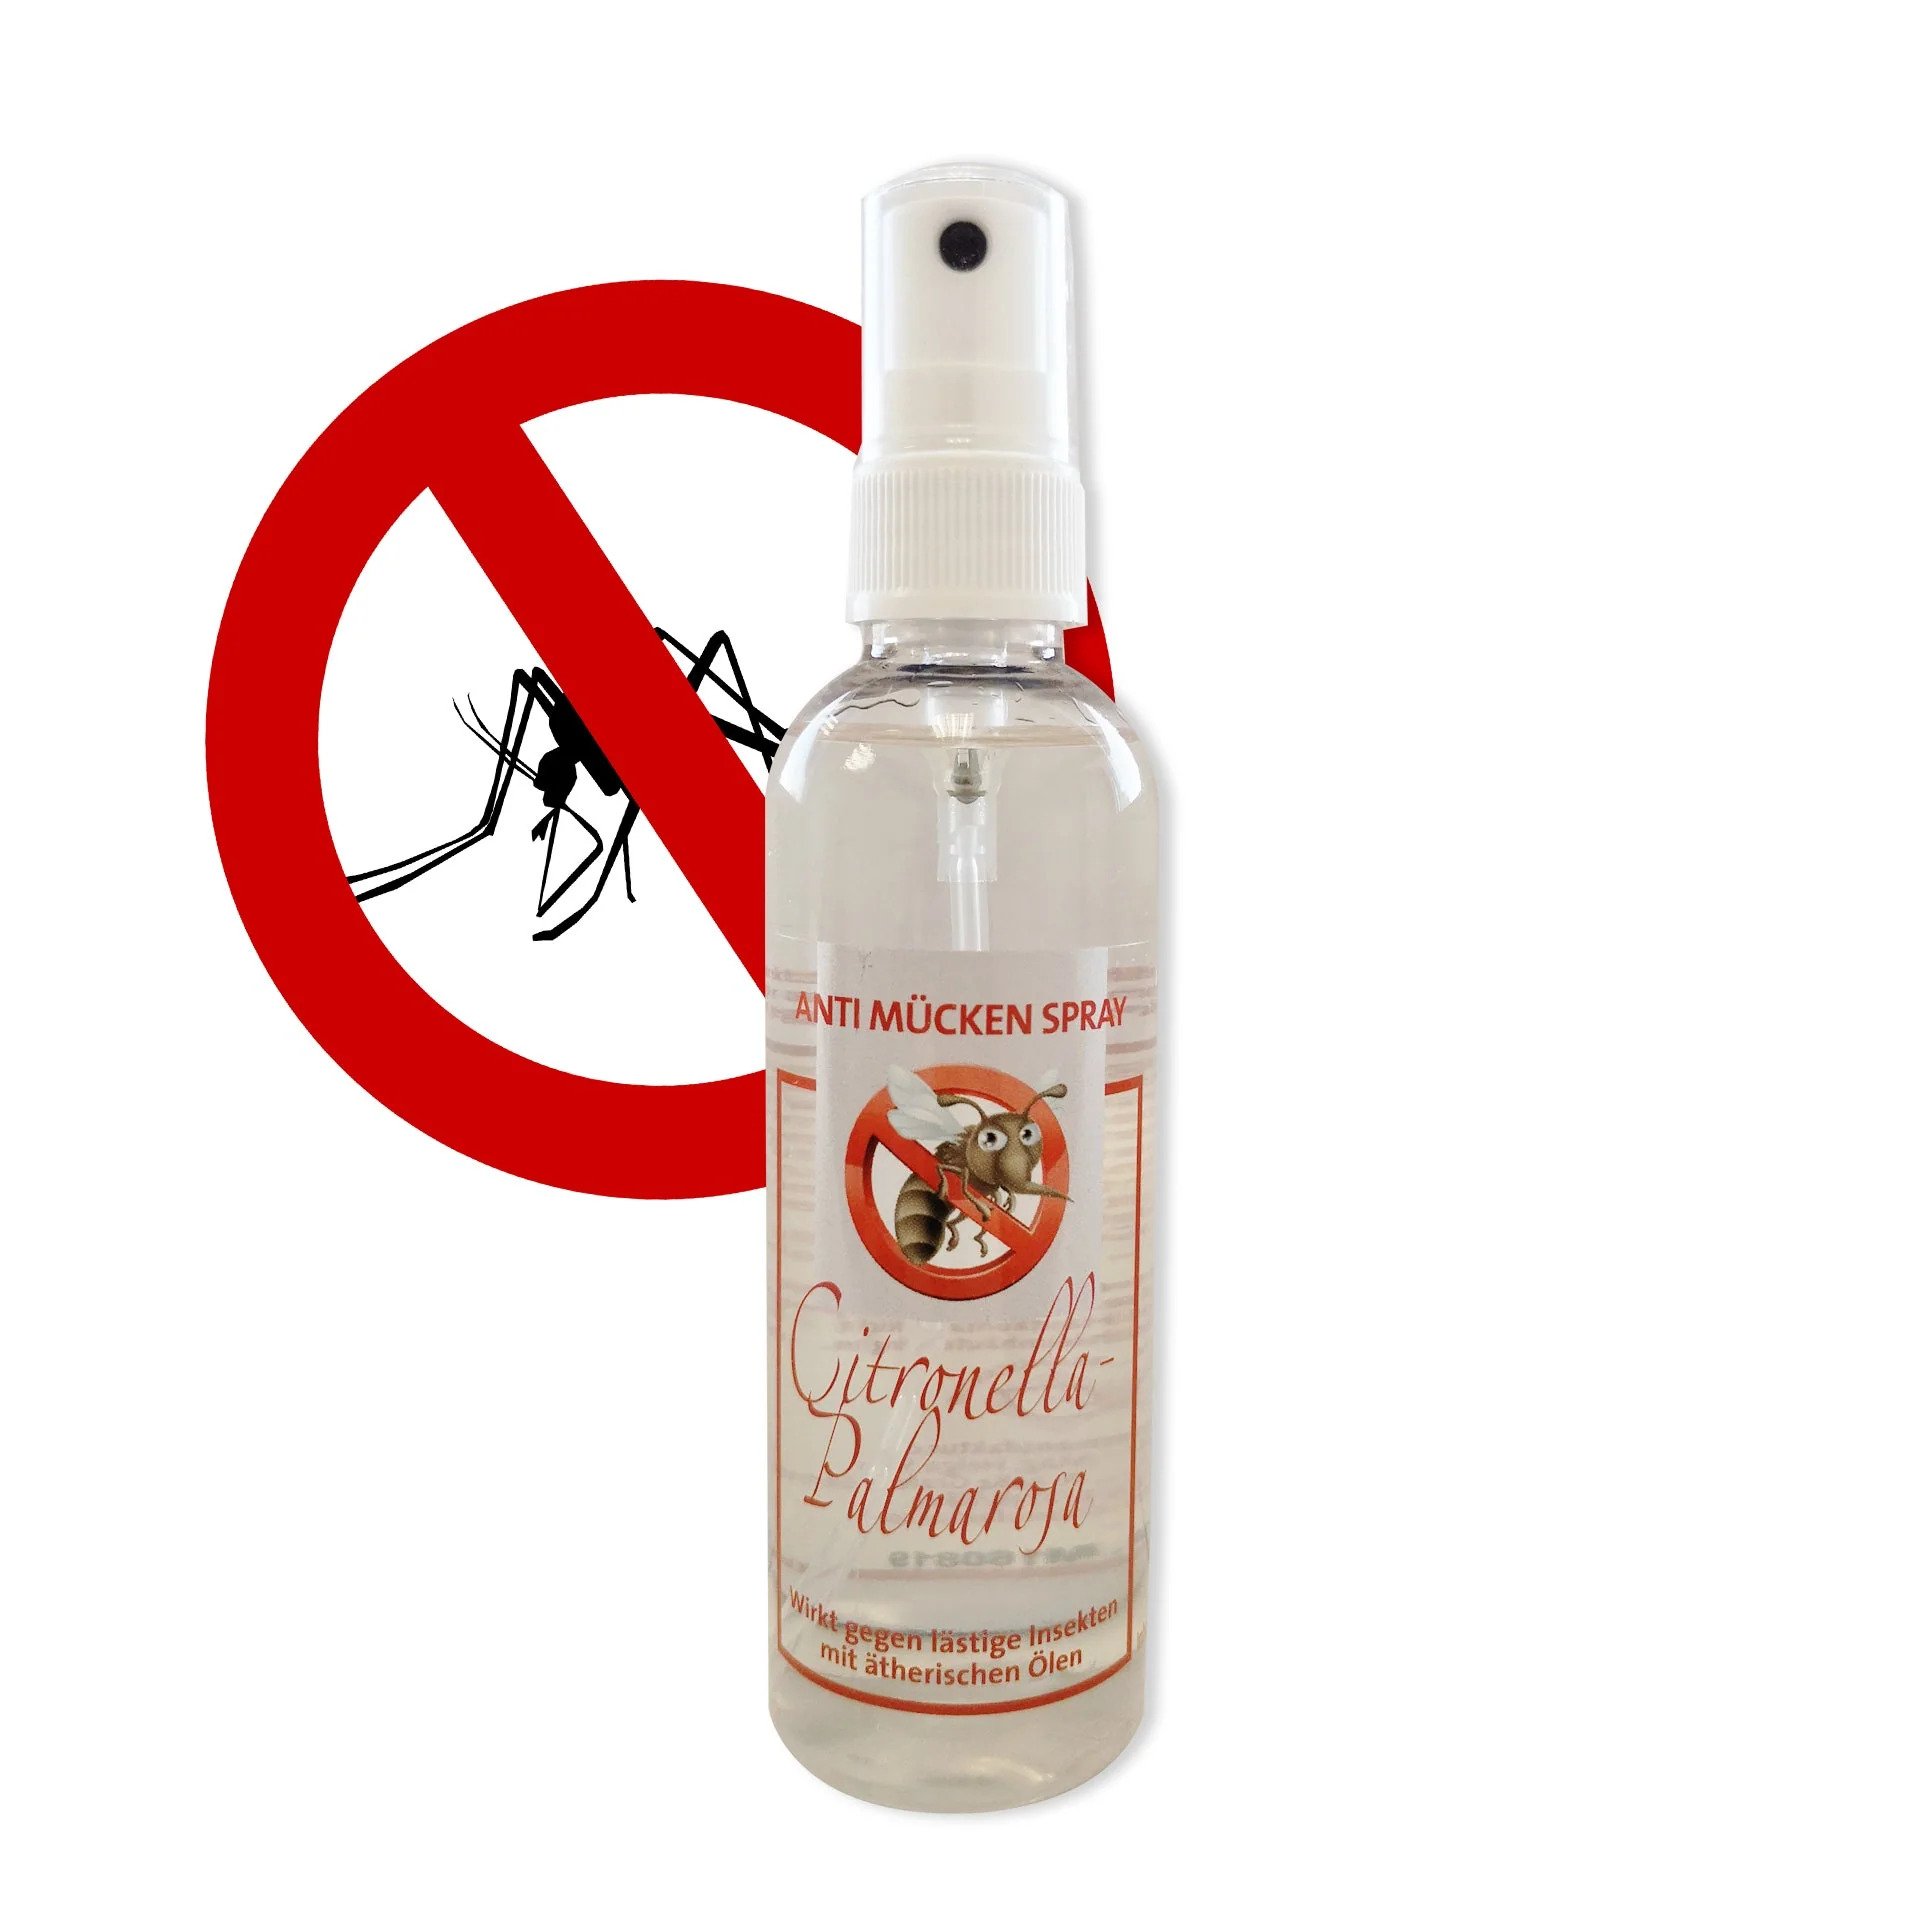 Anti-Mücken Spray: Mücken vertreiben mit ätherischen Ölen